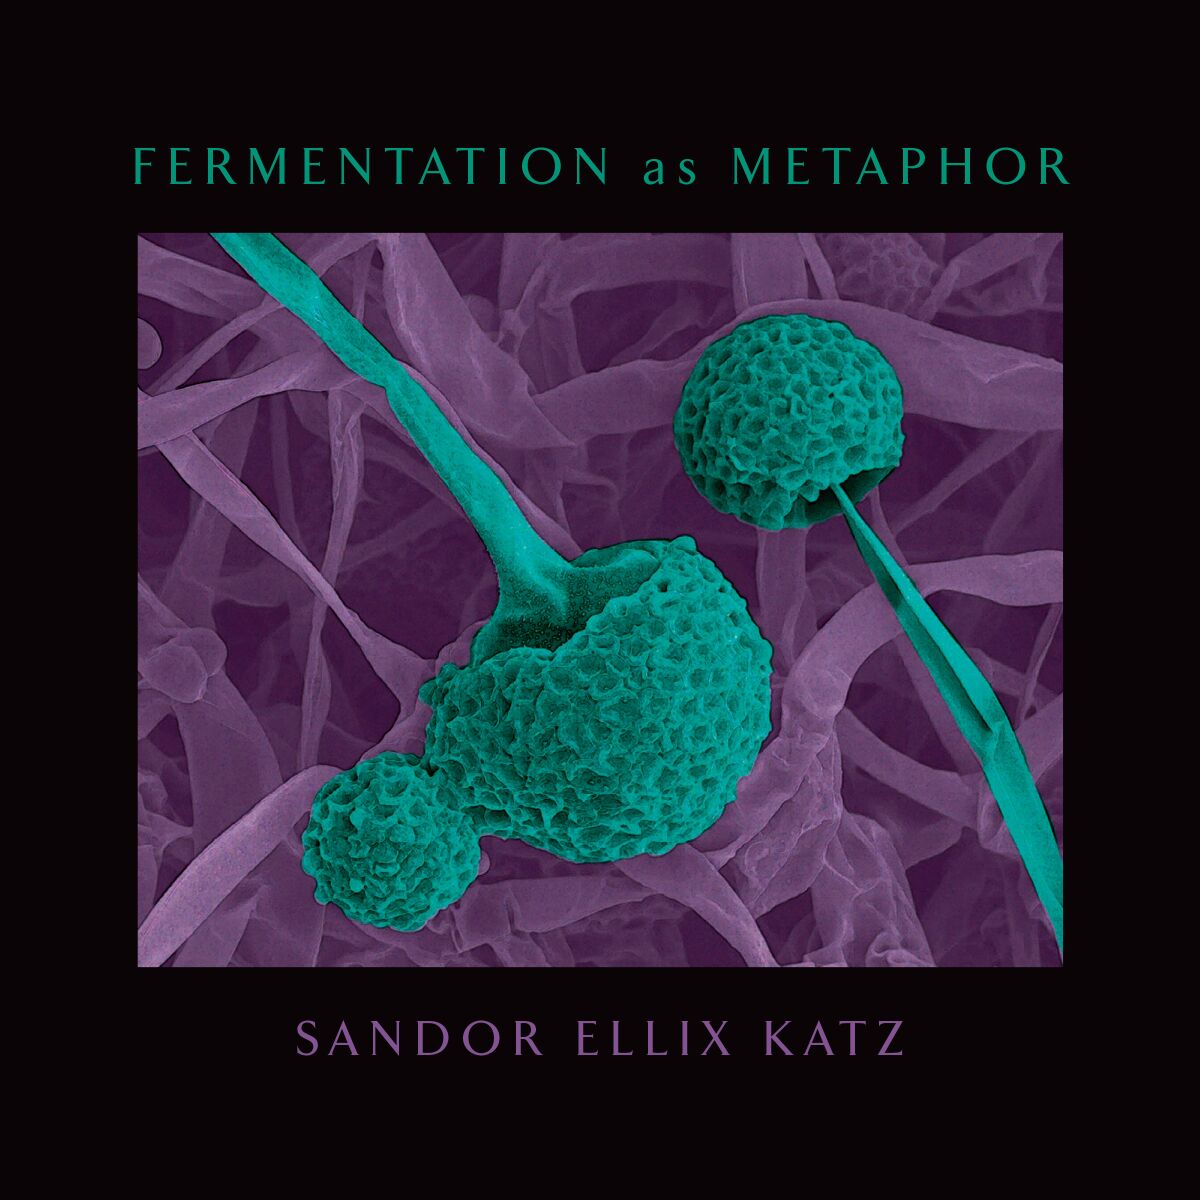 Fermentation as Metaphor by Sandor Ellix Katz